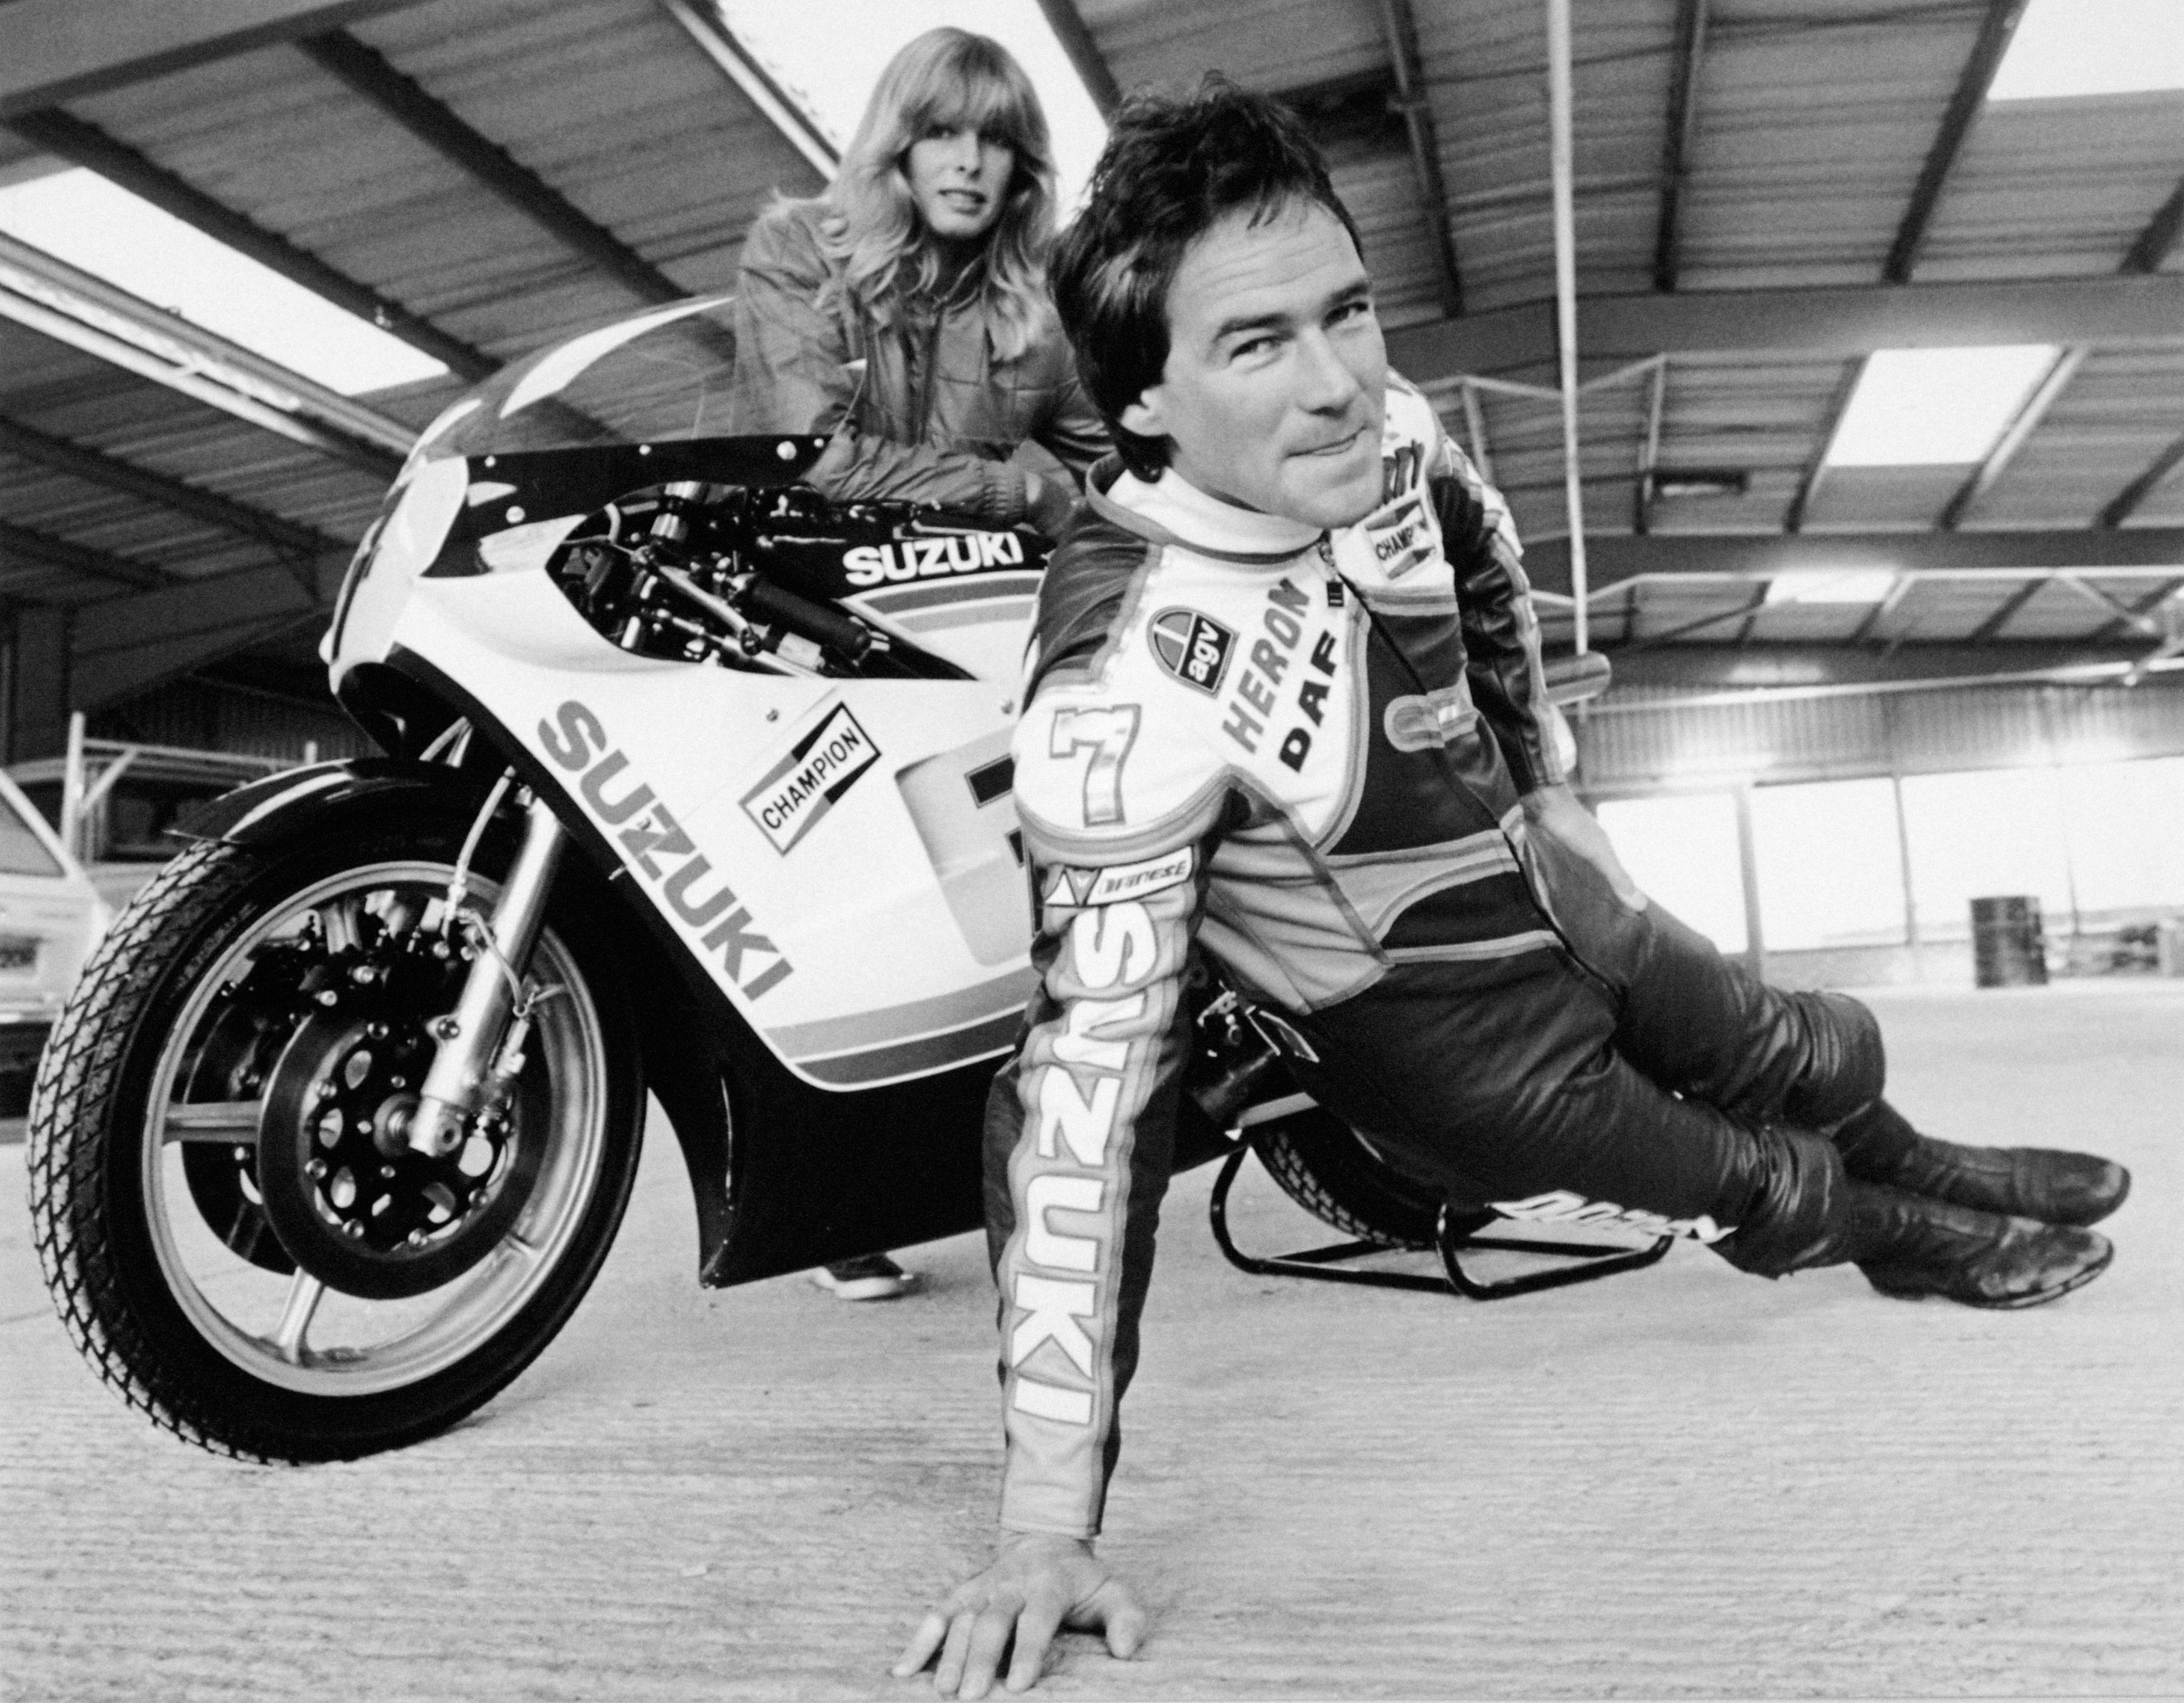 Motorcyclist Barry Sheene with wife Stephanie